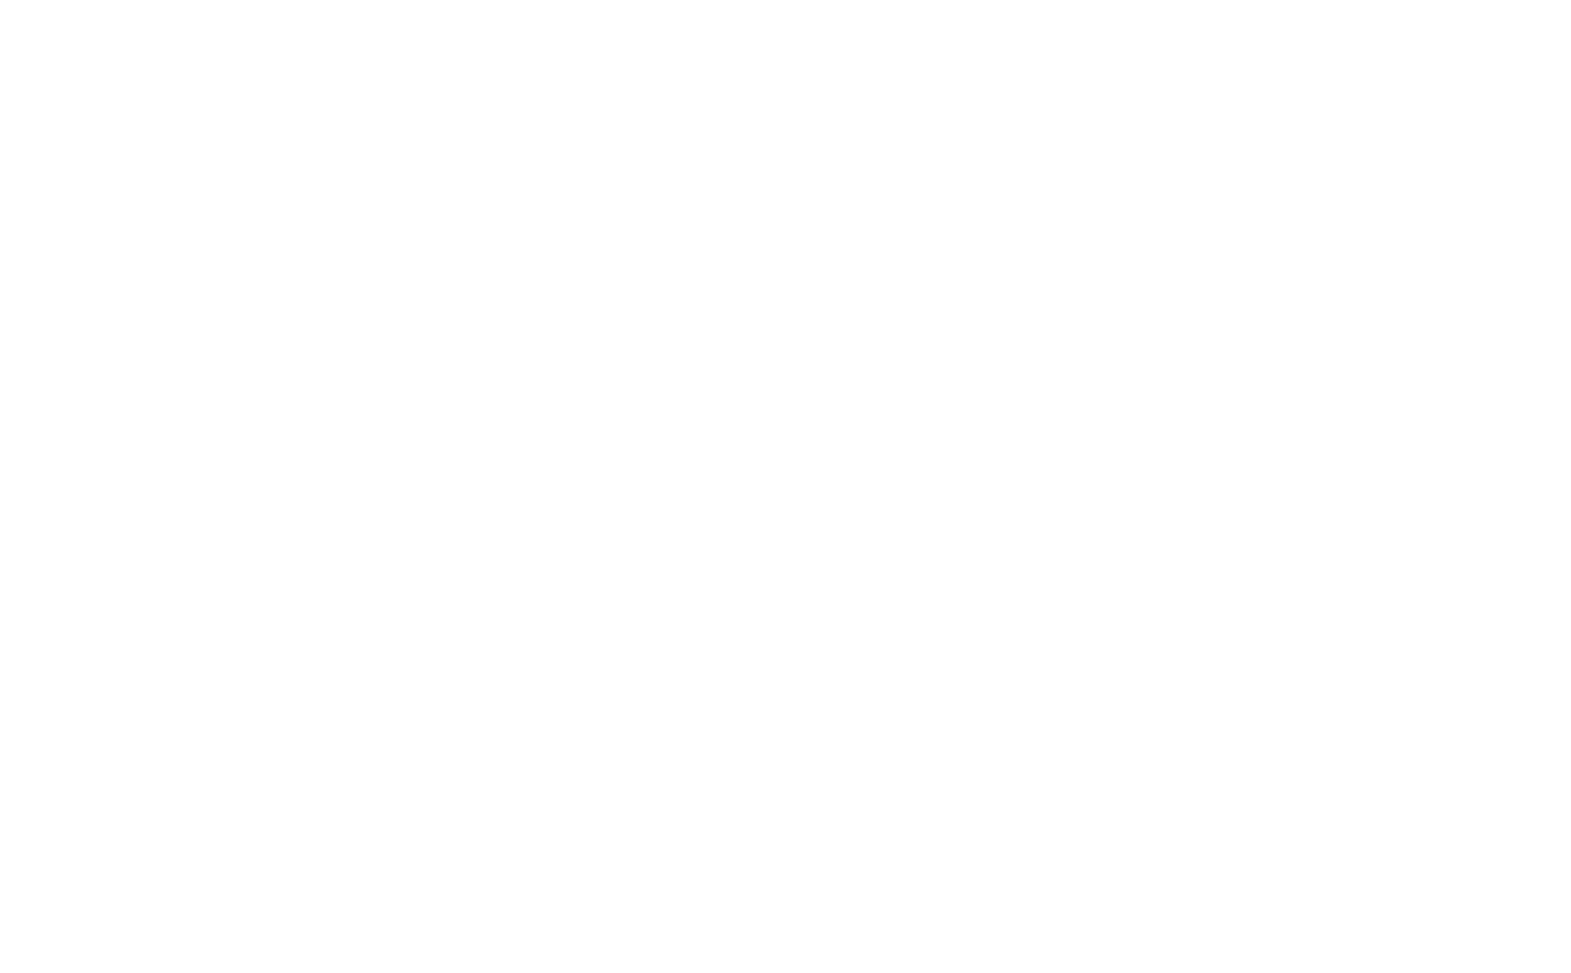 Petro Rio logo for dark backgrounds (transparent PNG)